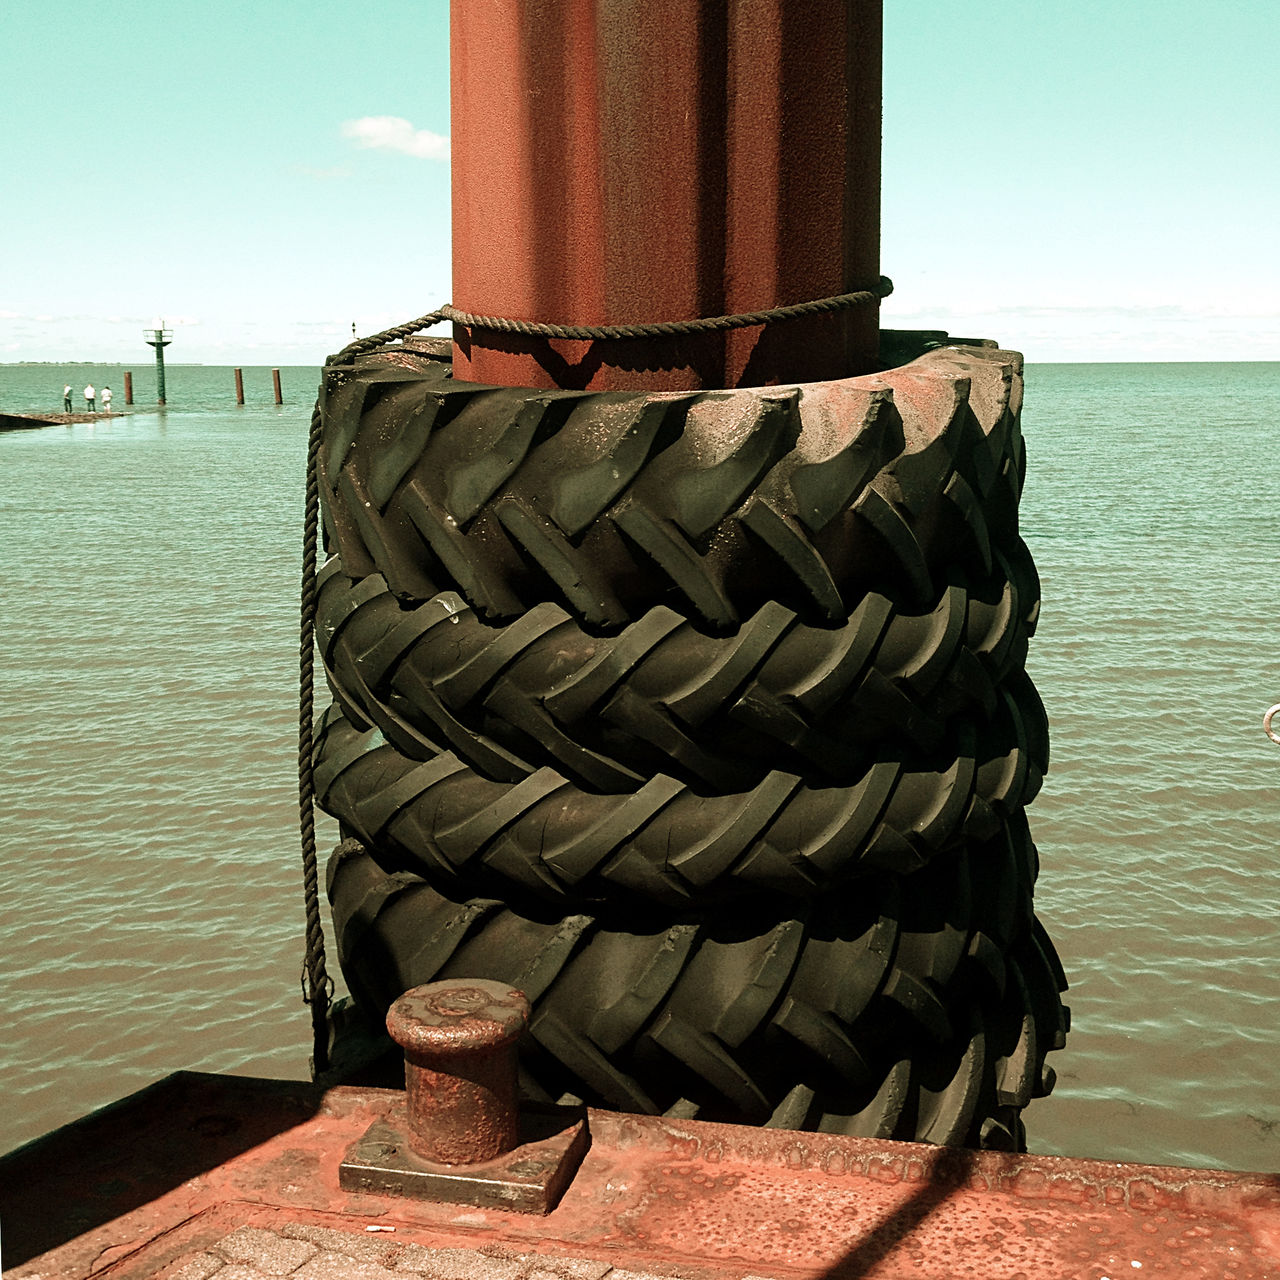 Vier alte Traktorhinterreifen umgeben einen rostogen Stahlpoller auf einem Schiffslandesteg. Dahinter das Meer und links ganz klein im Hintergrund weitere Landungsstege. Das Pfeilprofil der vier Reifen zeigt einheitlich nach links.